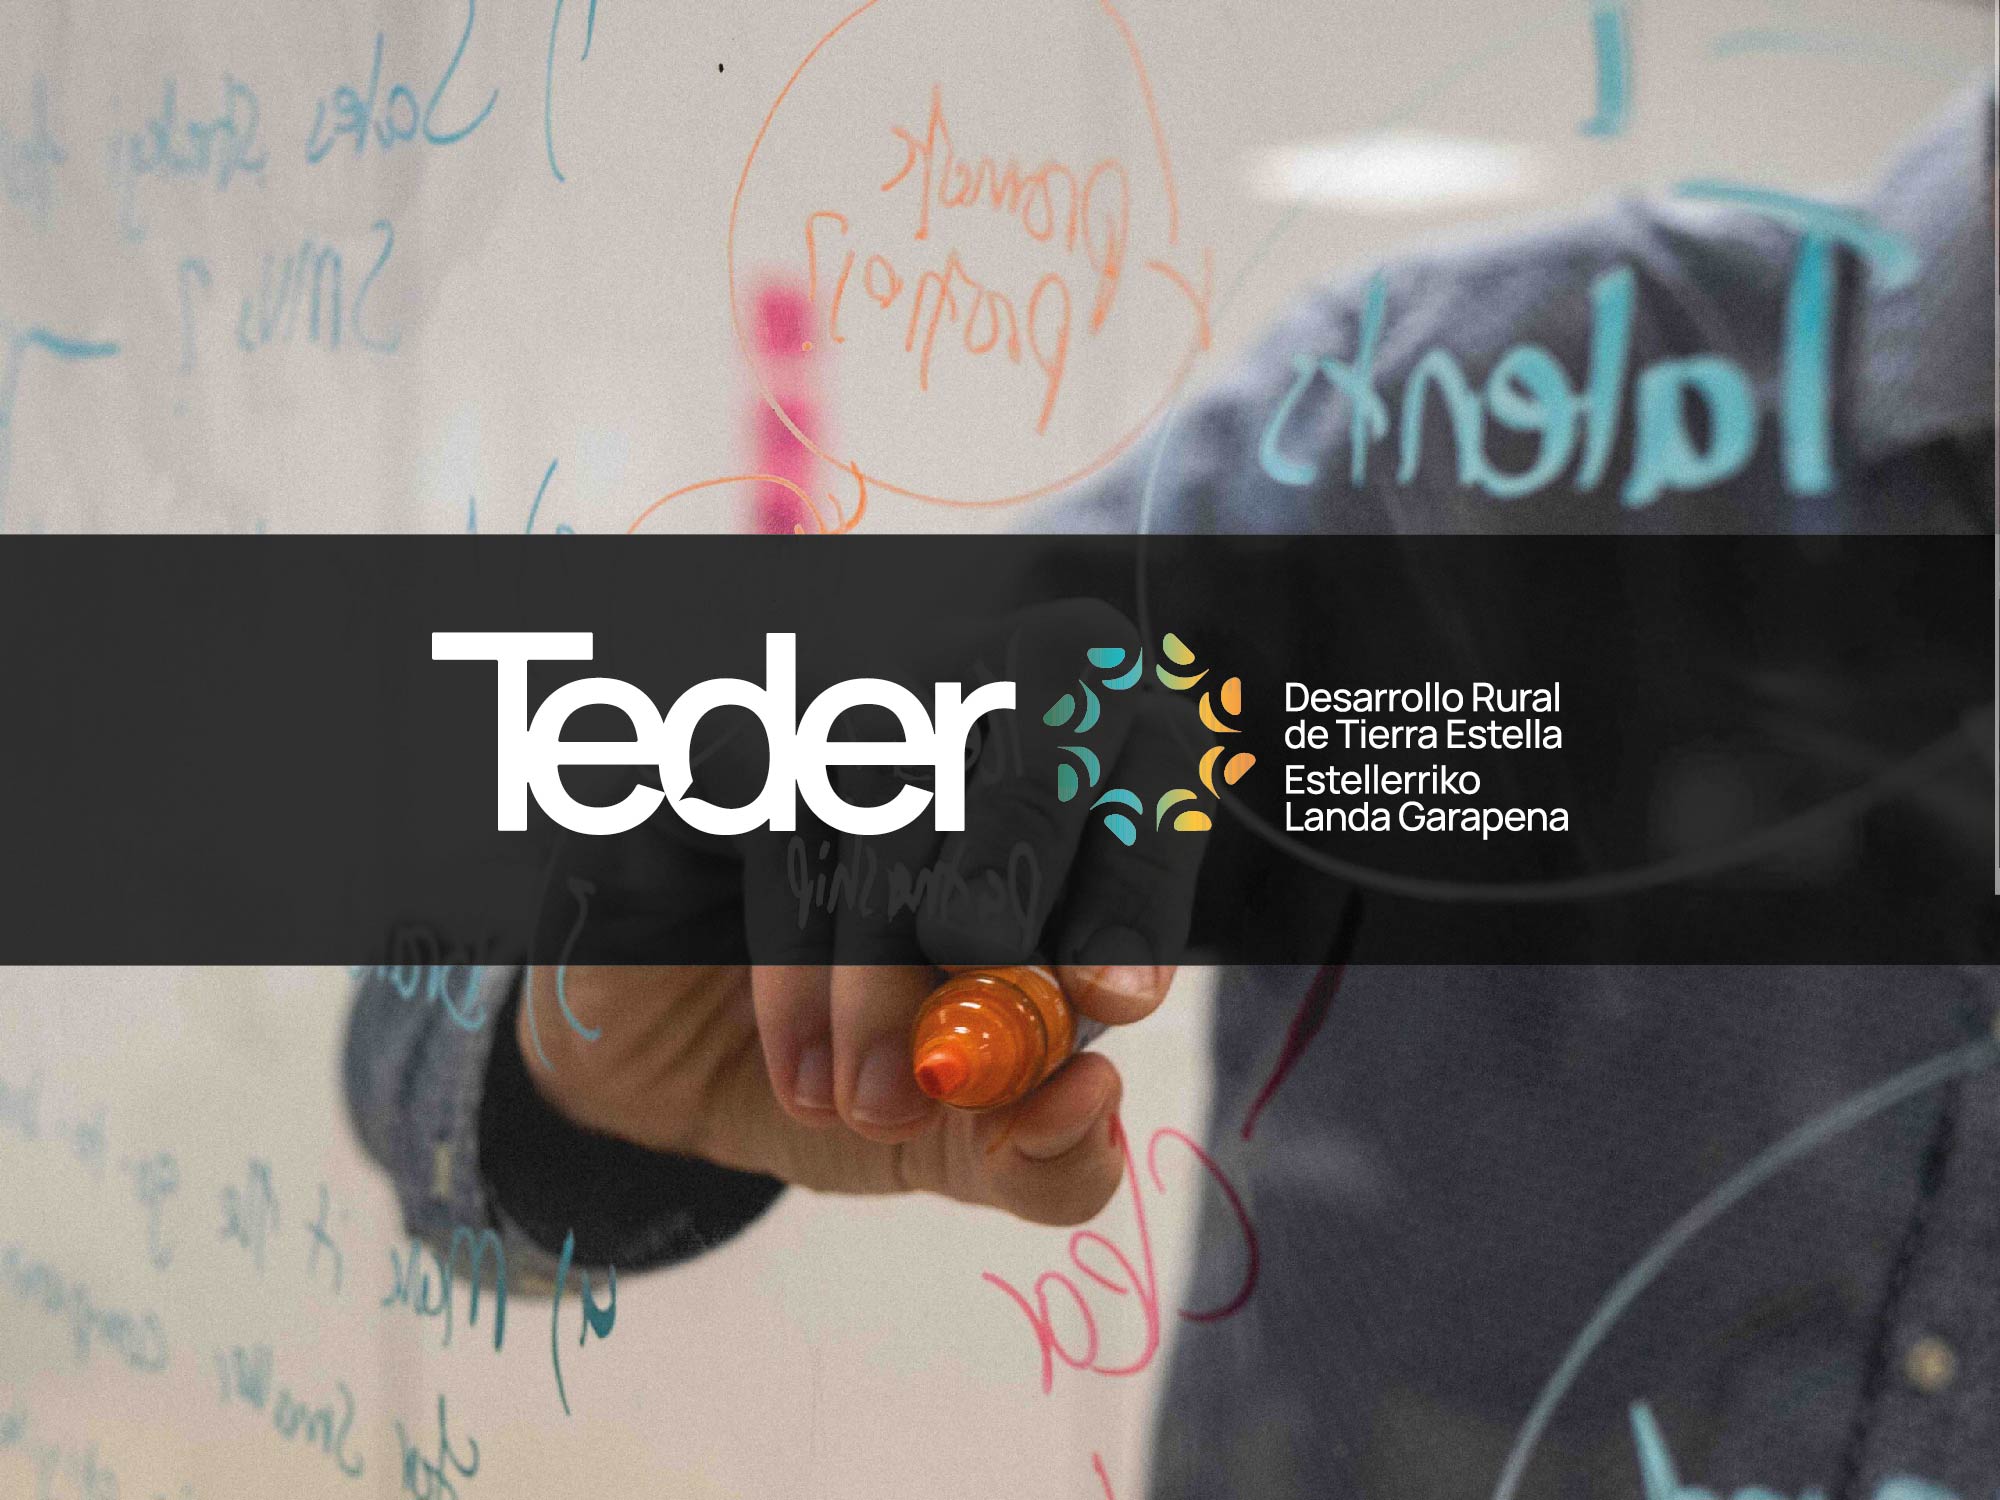 Asociación TEDER asesora en sus proyectos de emprendimiento a 281 personas en 2022, que suponen la creación de 77 empresas y 79 puestos de trabajo en la comarca de Tierra Estella